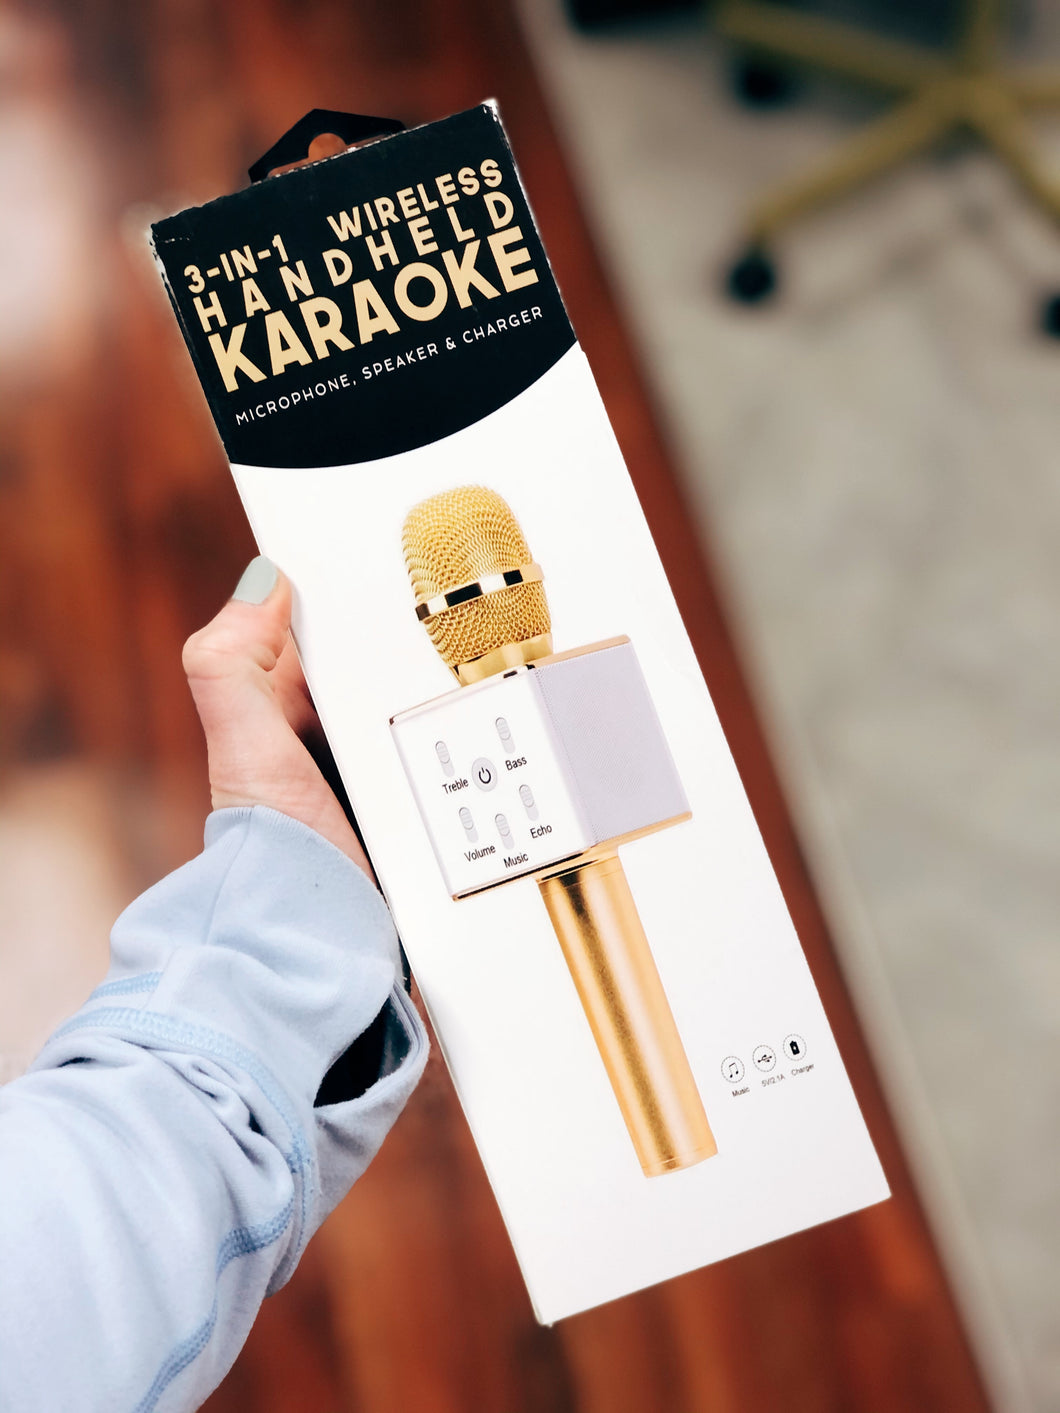 Handheld Karaoke 3-in-1